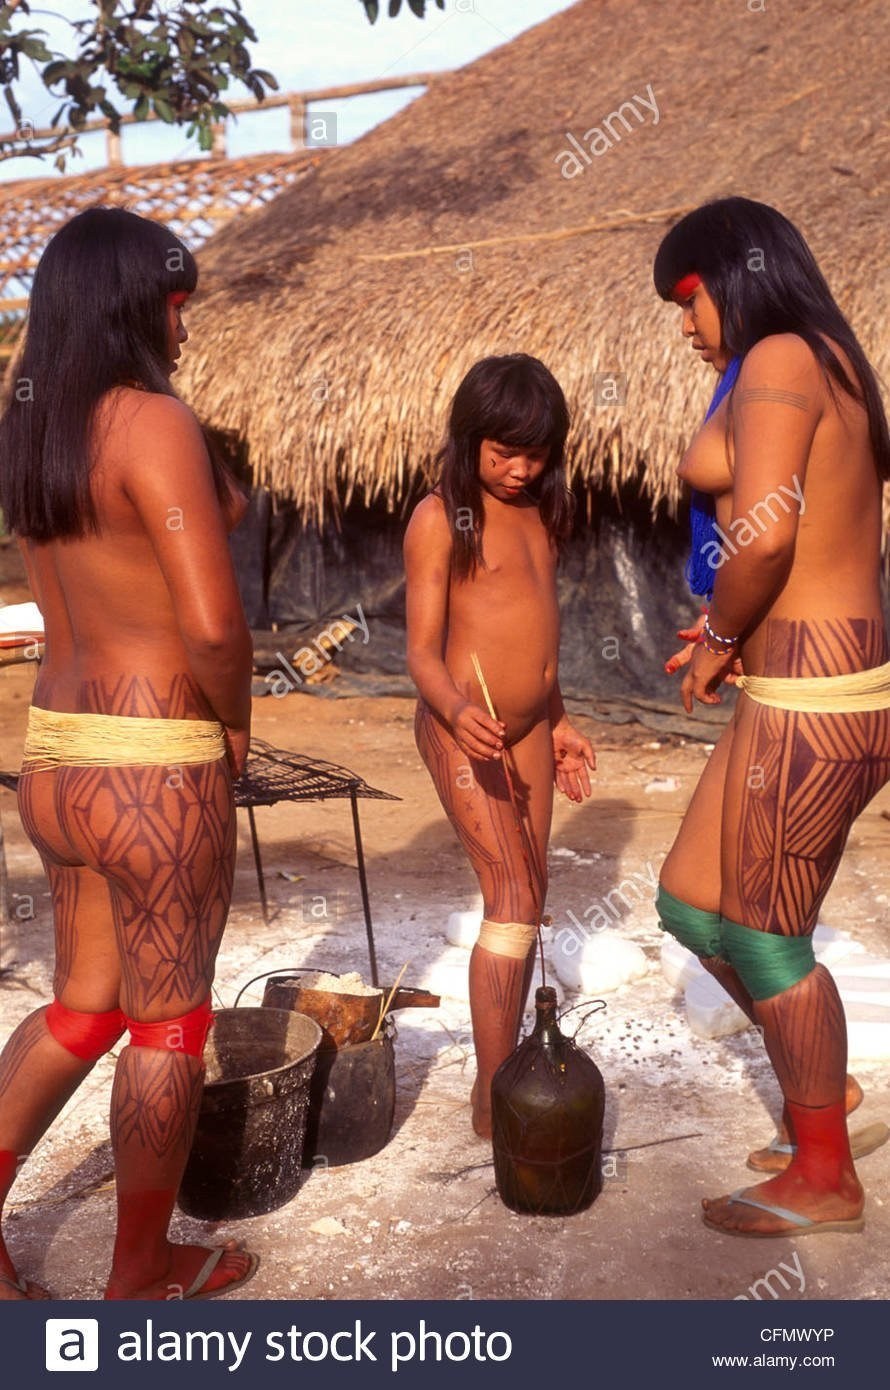 Голые племена индейцев дикарей моют пизду сиськи